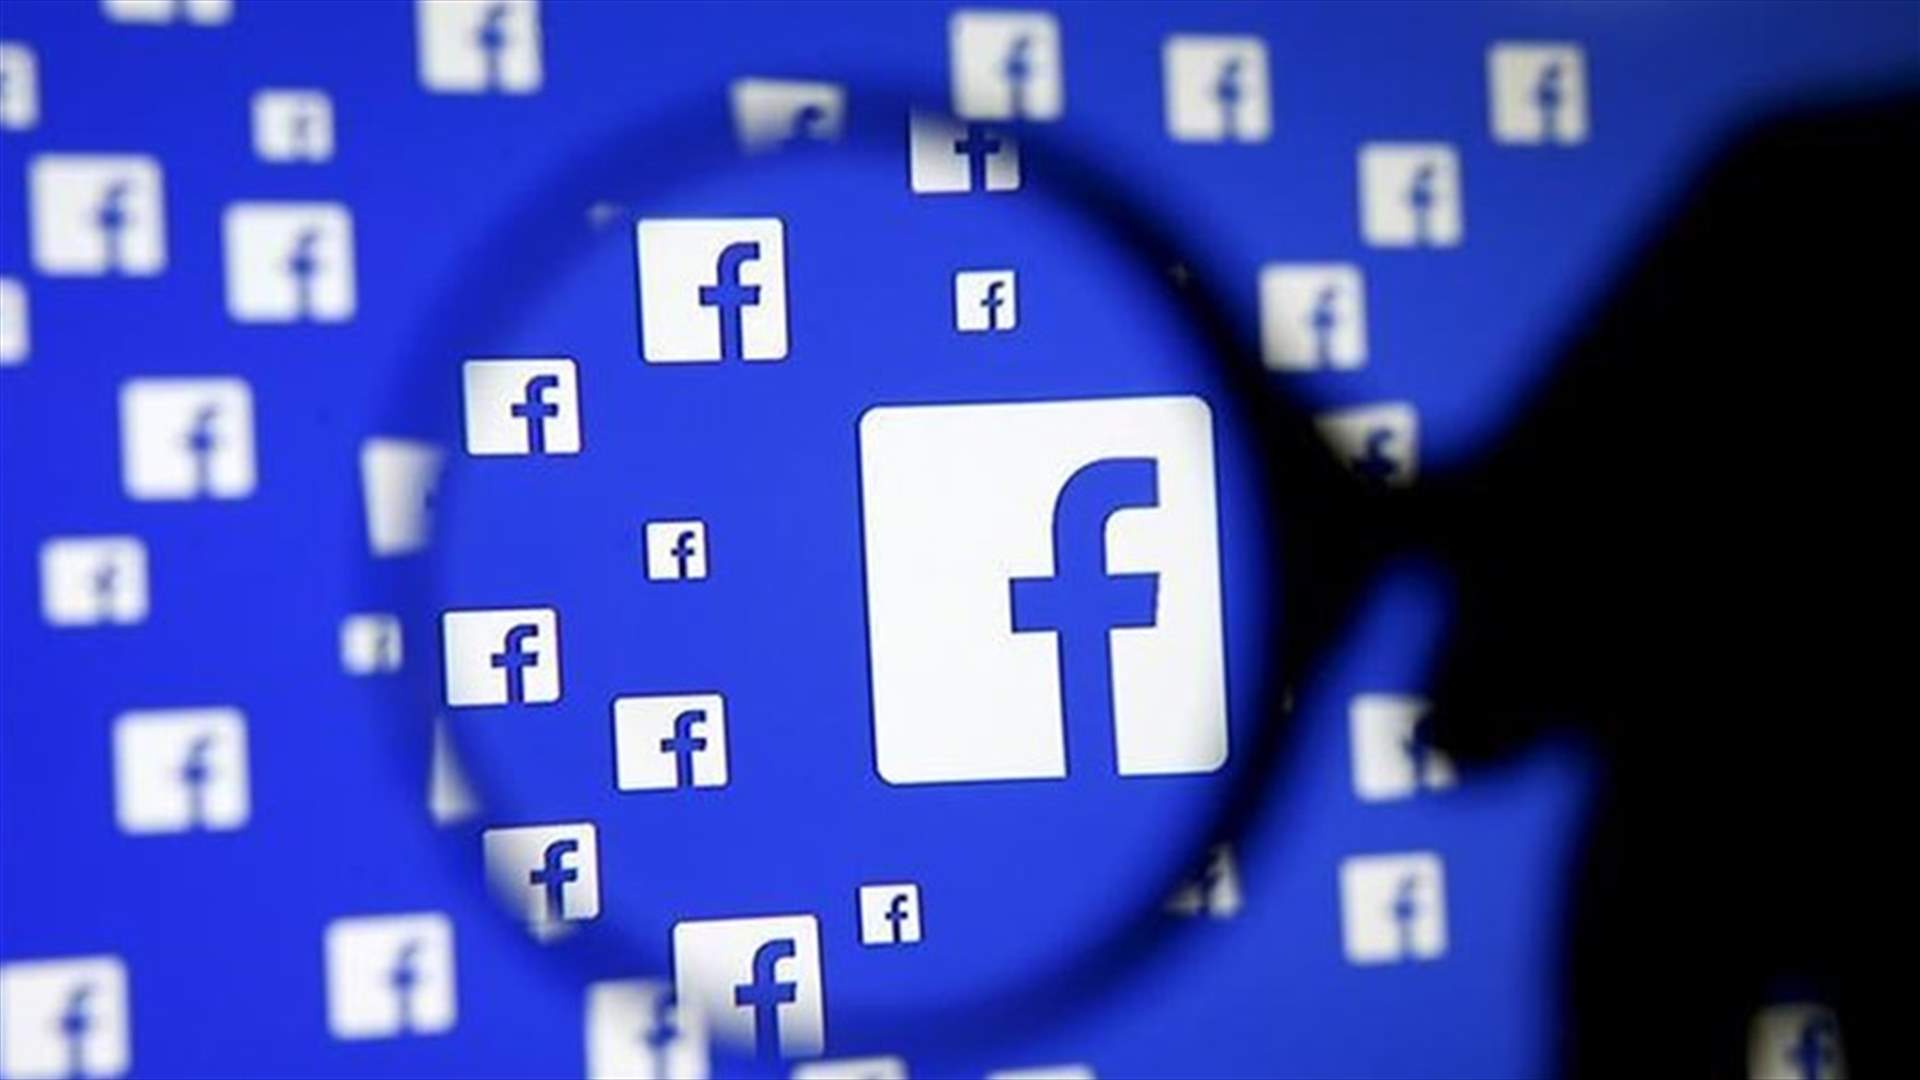 ميزة جديدة من فيسبوك.... أصبح بإمكانكم حماية صوركم الشخصيّة!